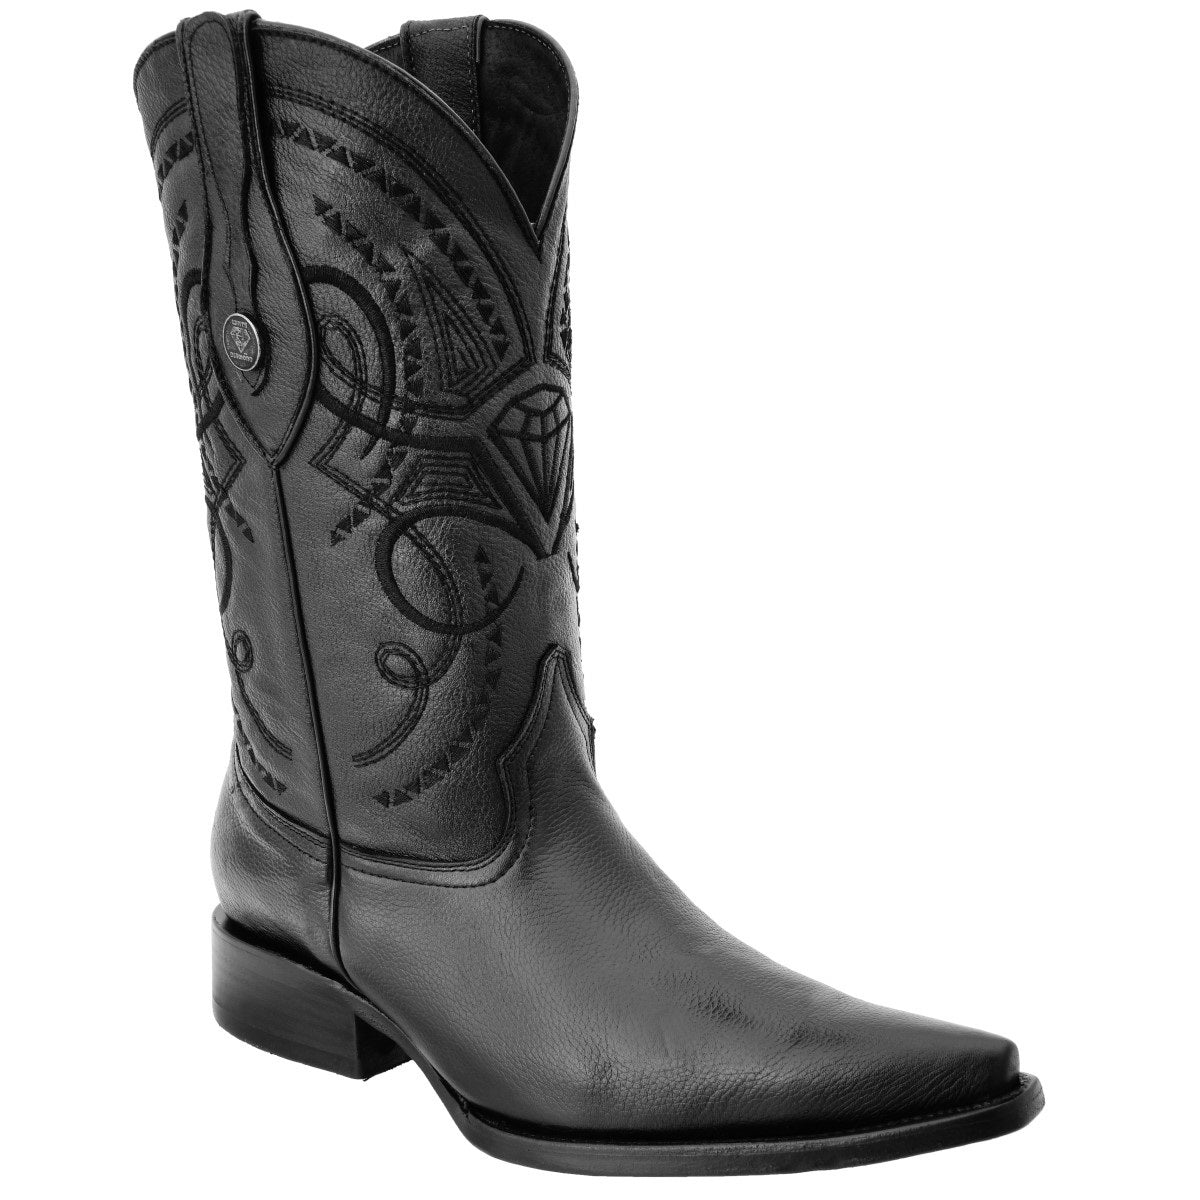 Botas Vaqueras TM-WD0145 - Western Boots